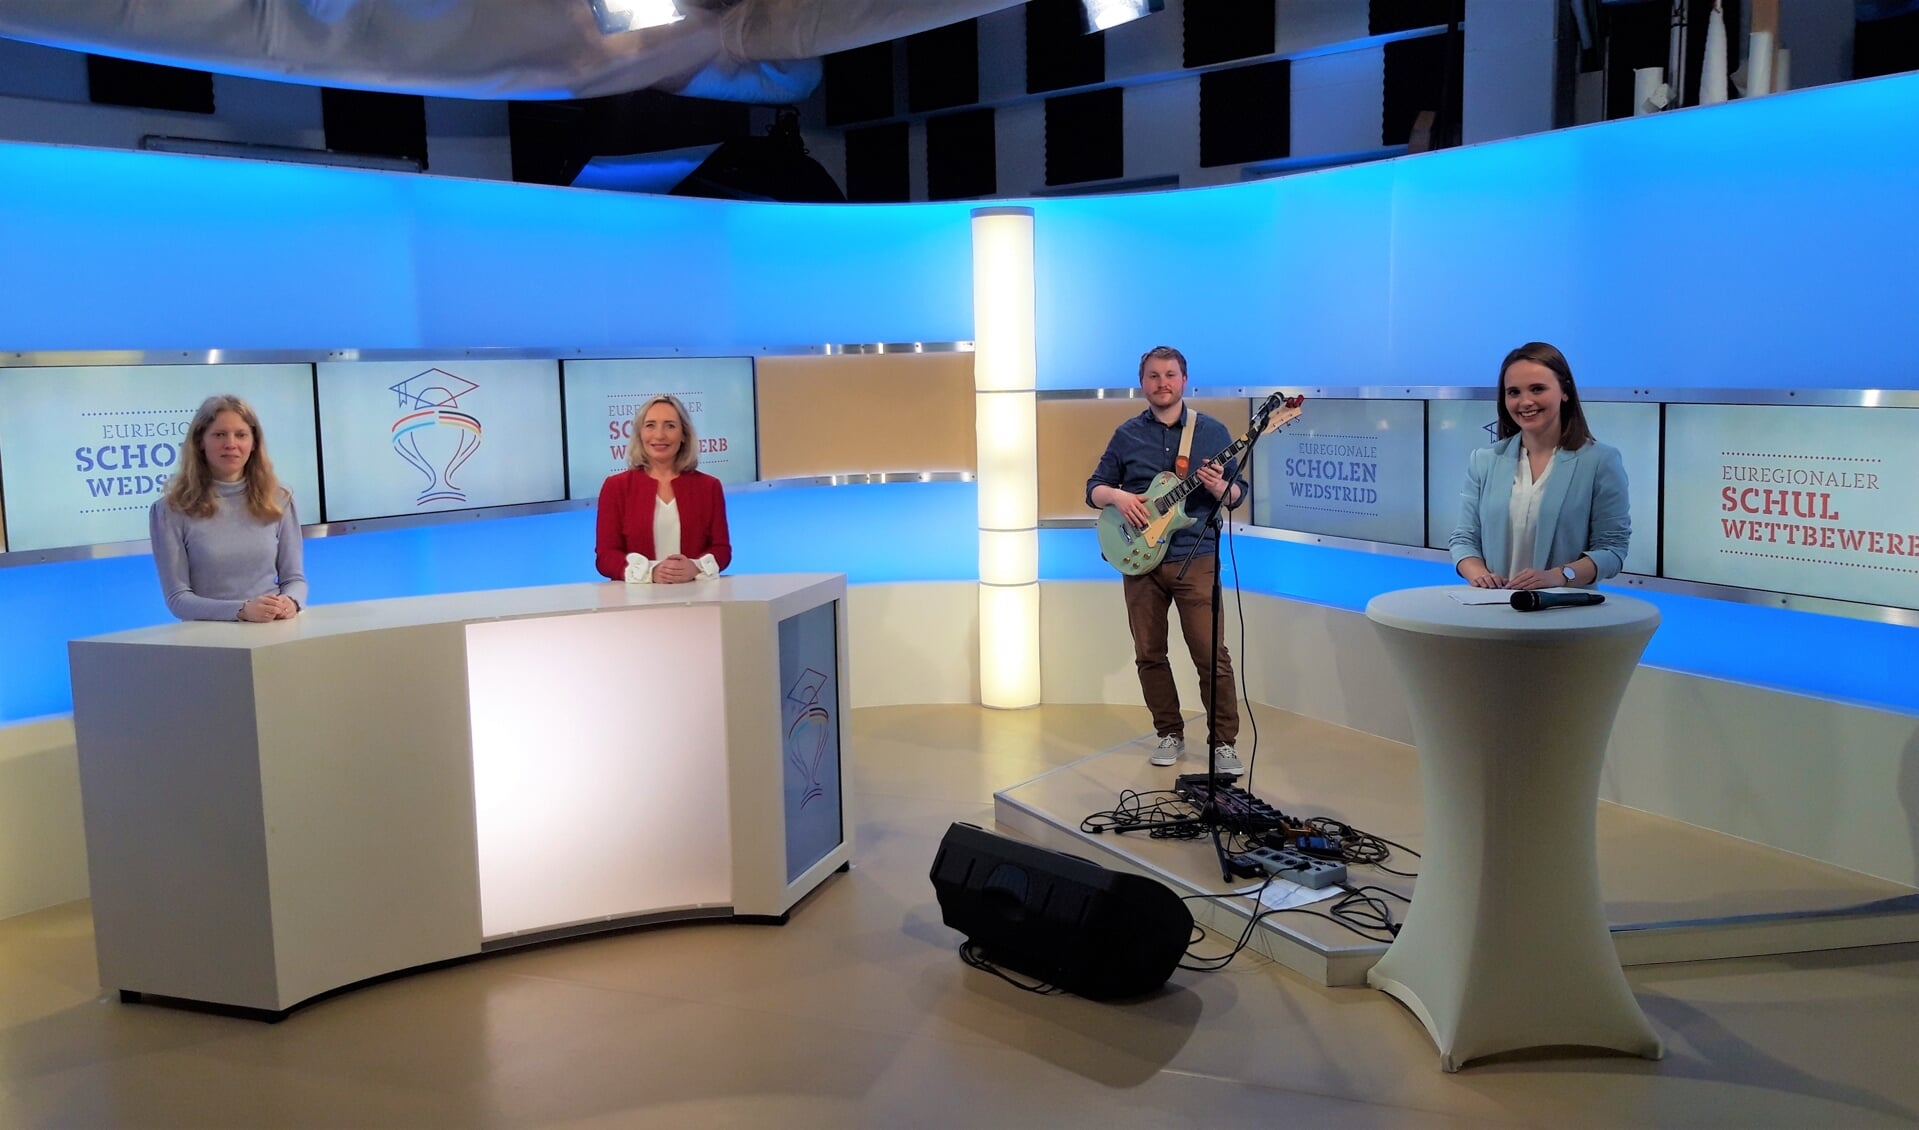 De prijsuitreiking van de Euregionale Scholenwedstrijd vond plaats in een televisiestudio in Duisburg. V.l.n.r. Heidi de Ruiter, Margot Ribberink, August Klar en Sina Kuipers.